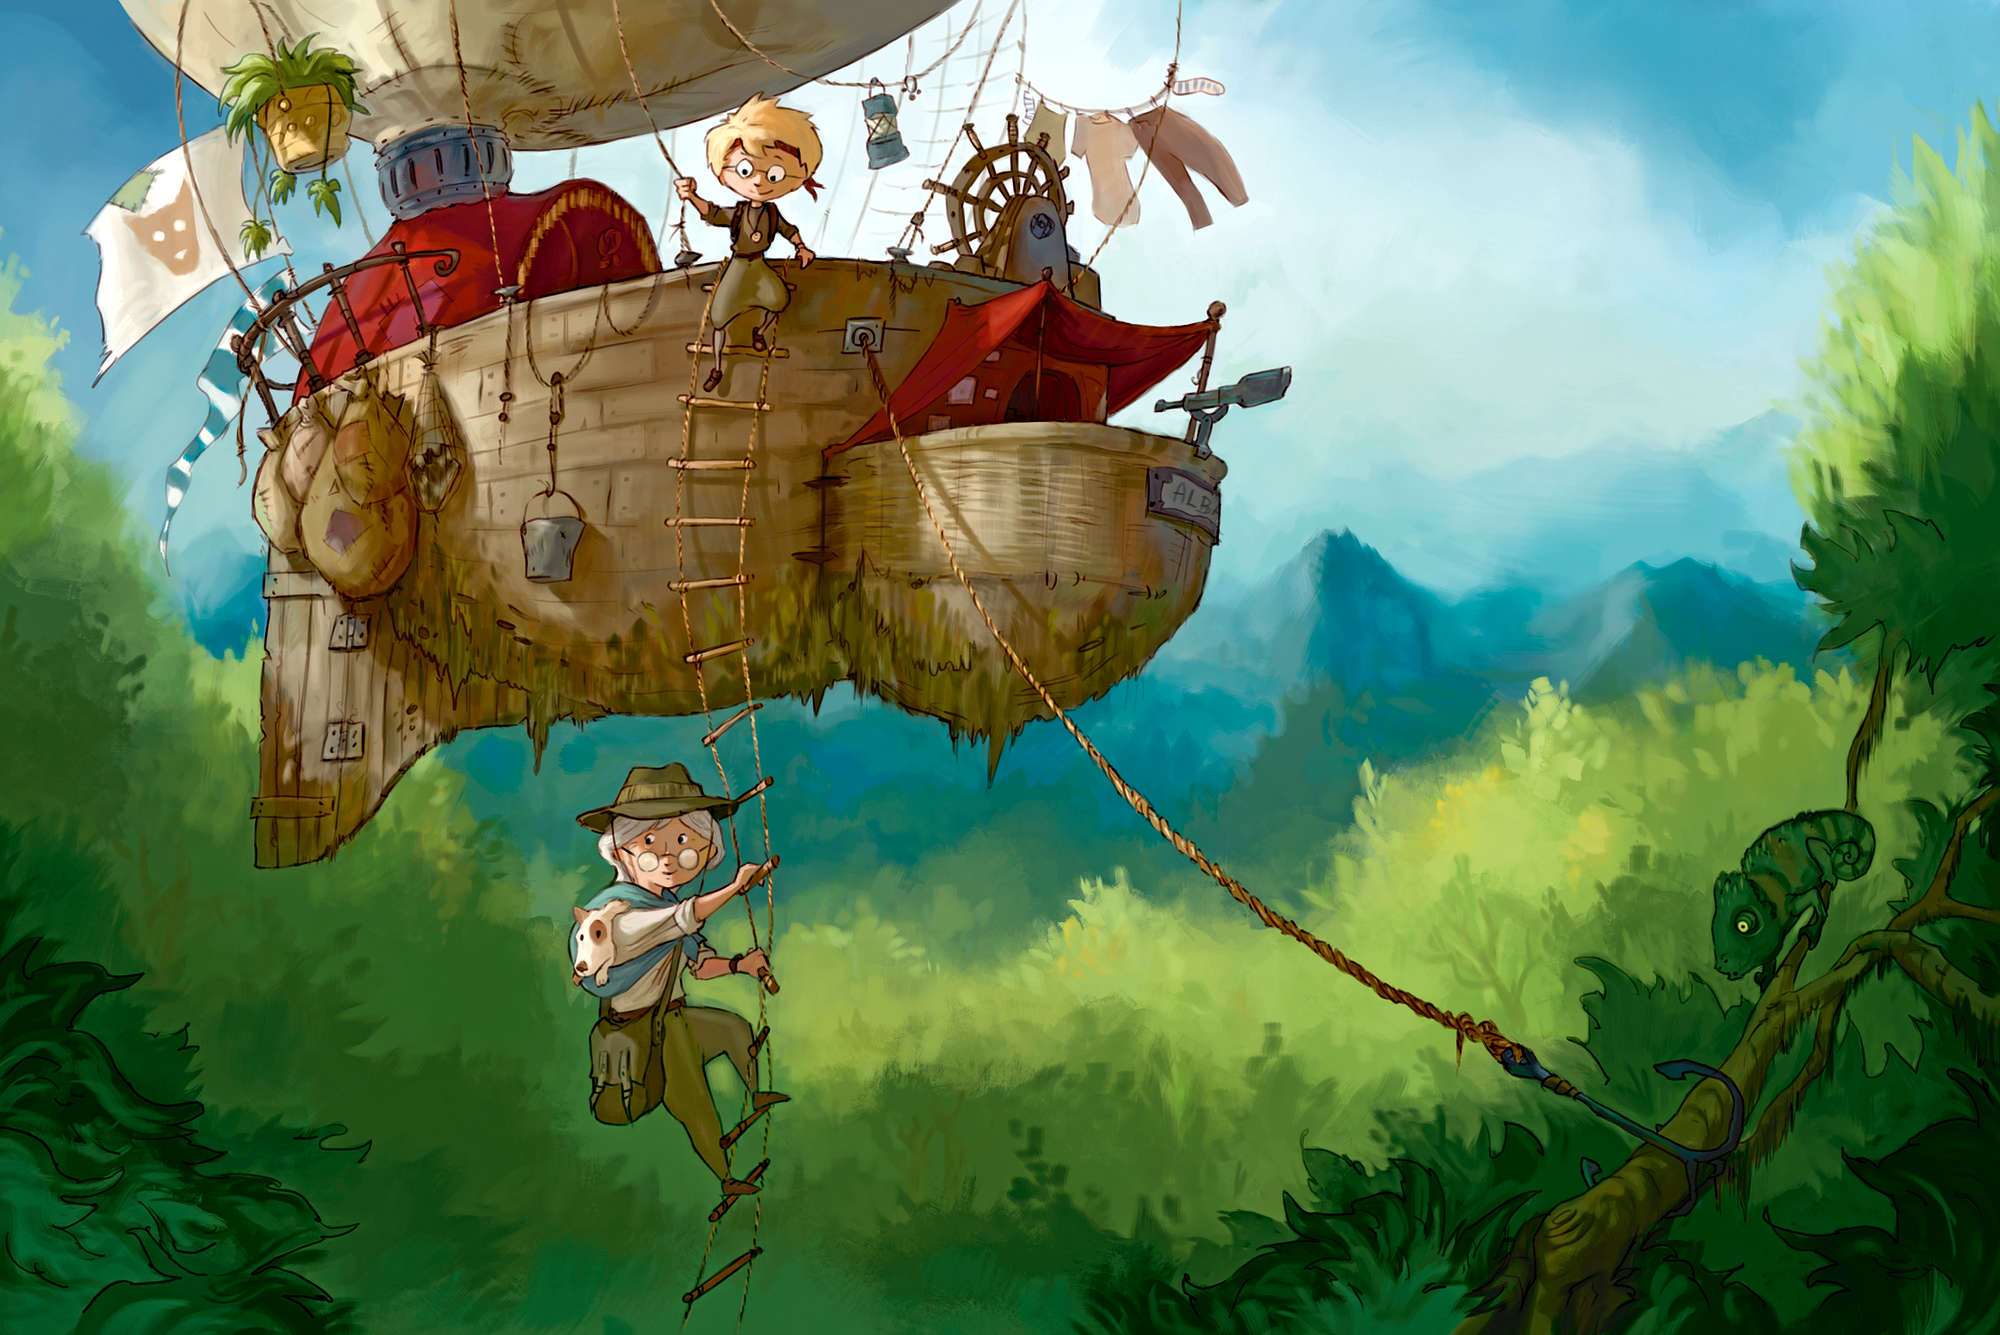             Kindermuurschildering Avonturier met vliegend schip op parelmoer glad vlies
        